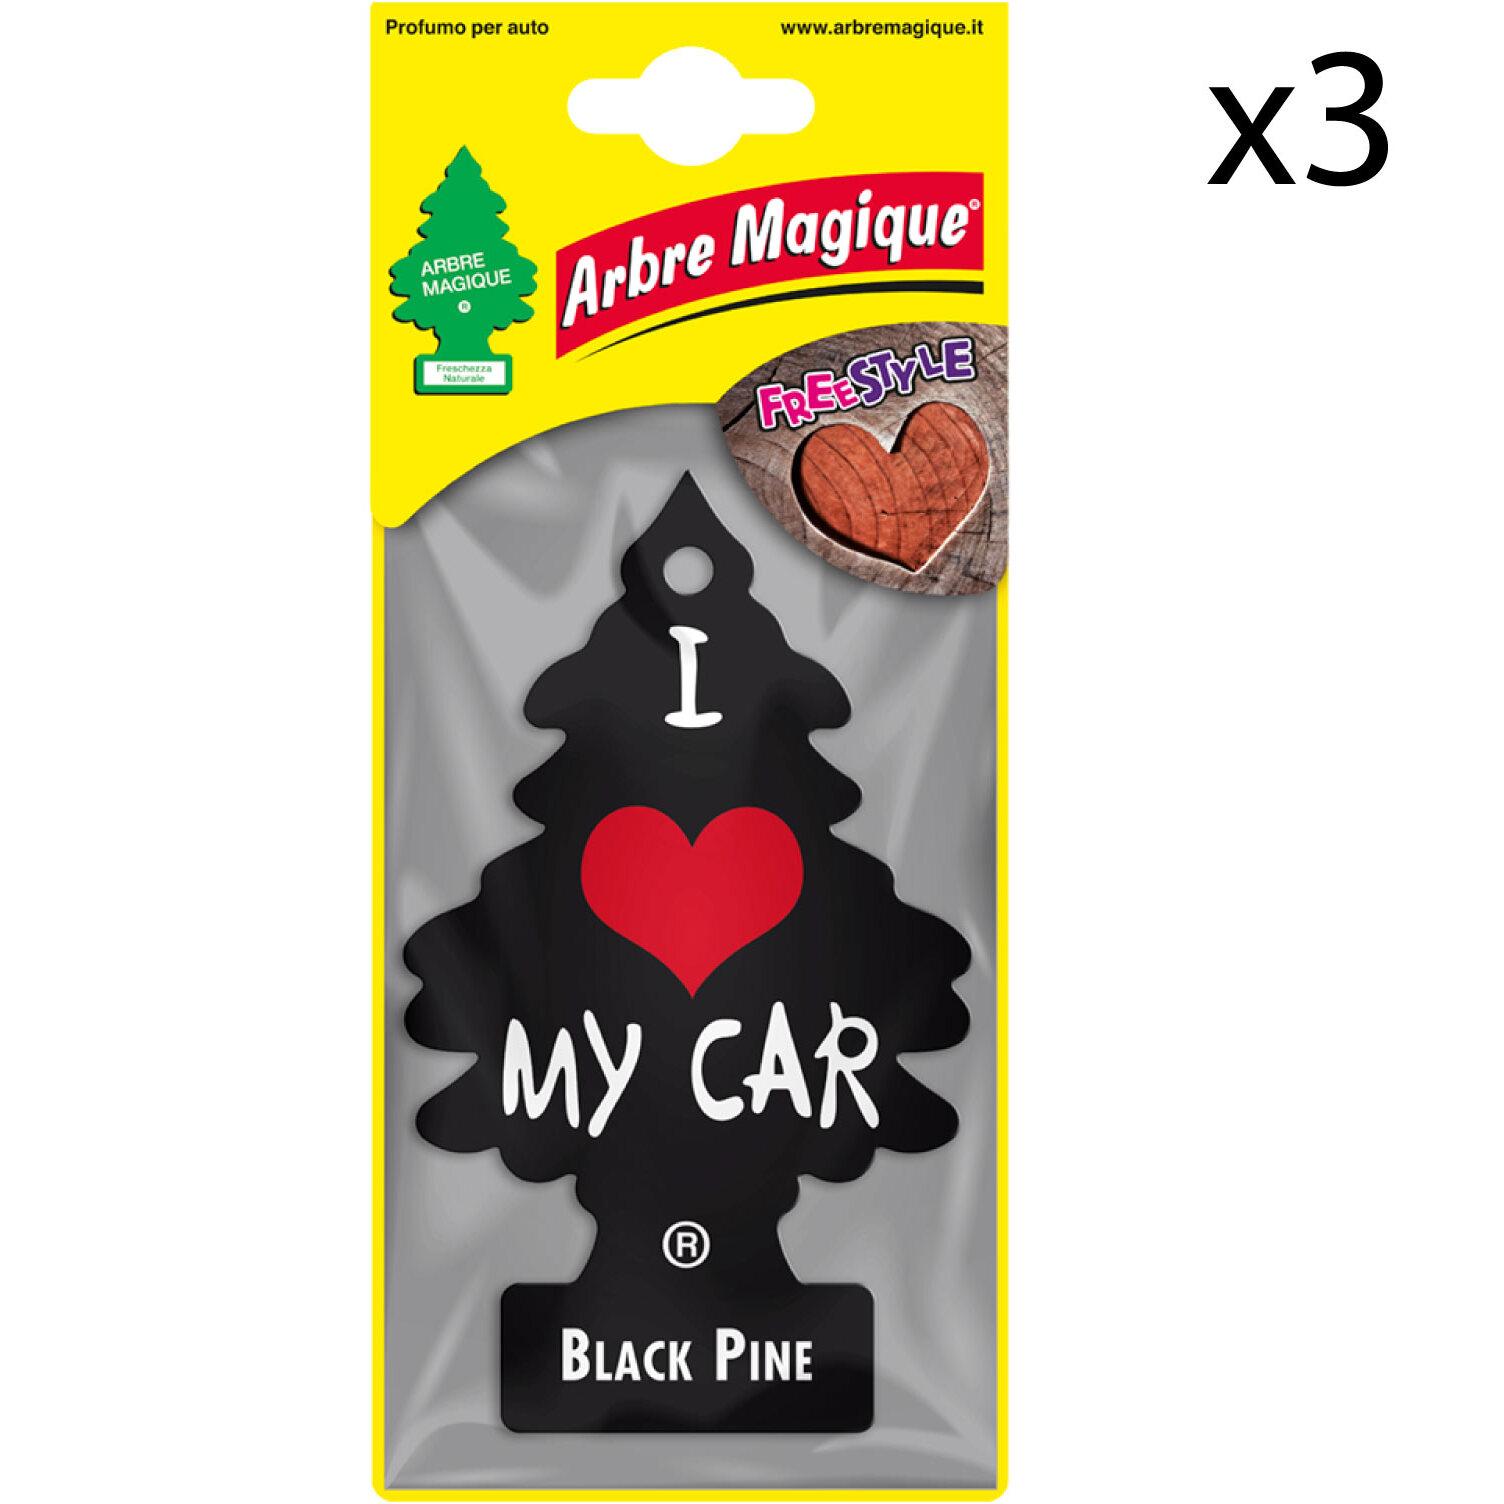 3x Arbre Magique Freestyle Profumatore Solido per Auto Fragranza Black Pine